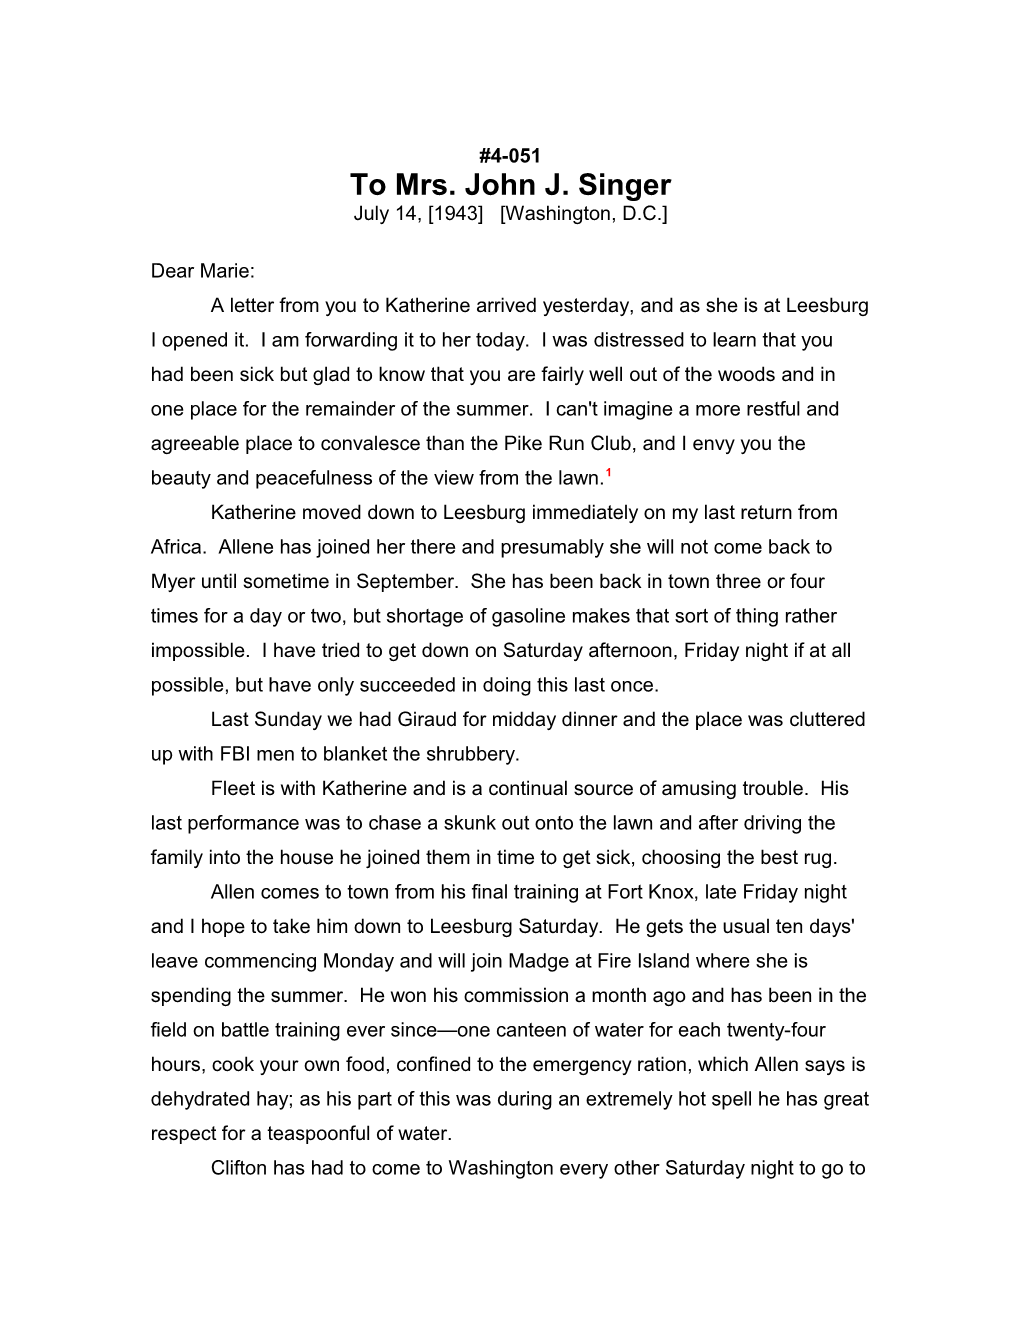 To Mrs. John J. Singer